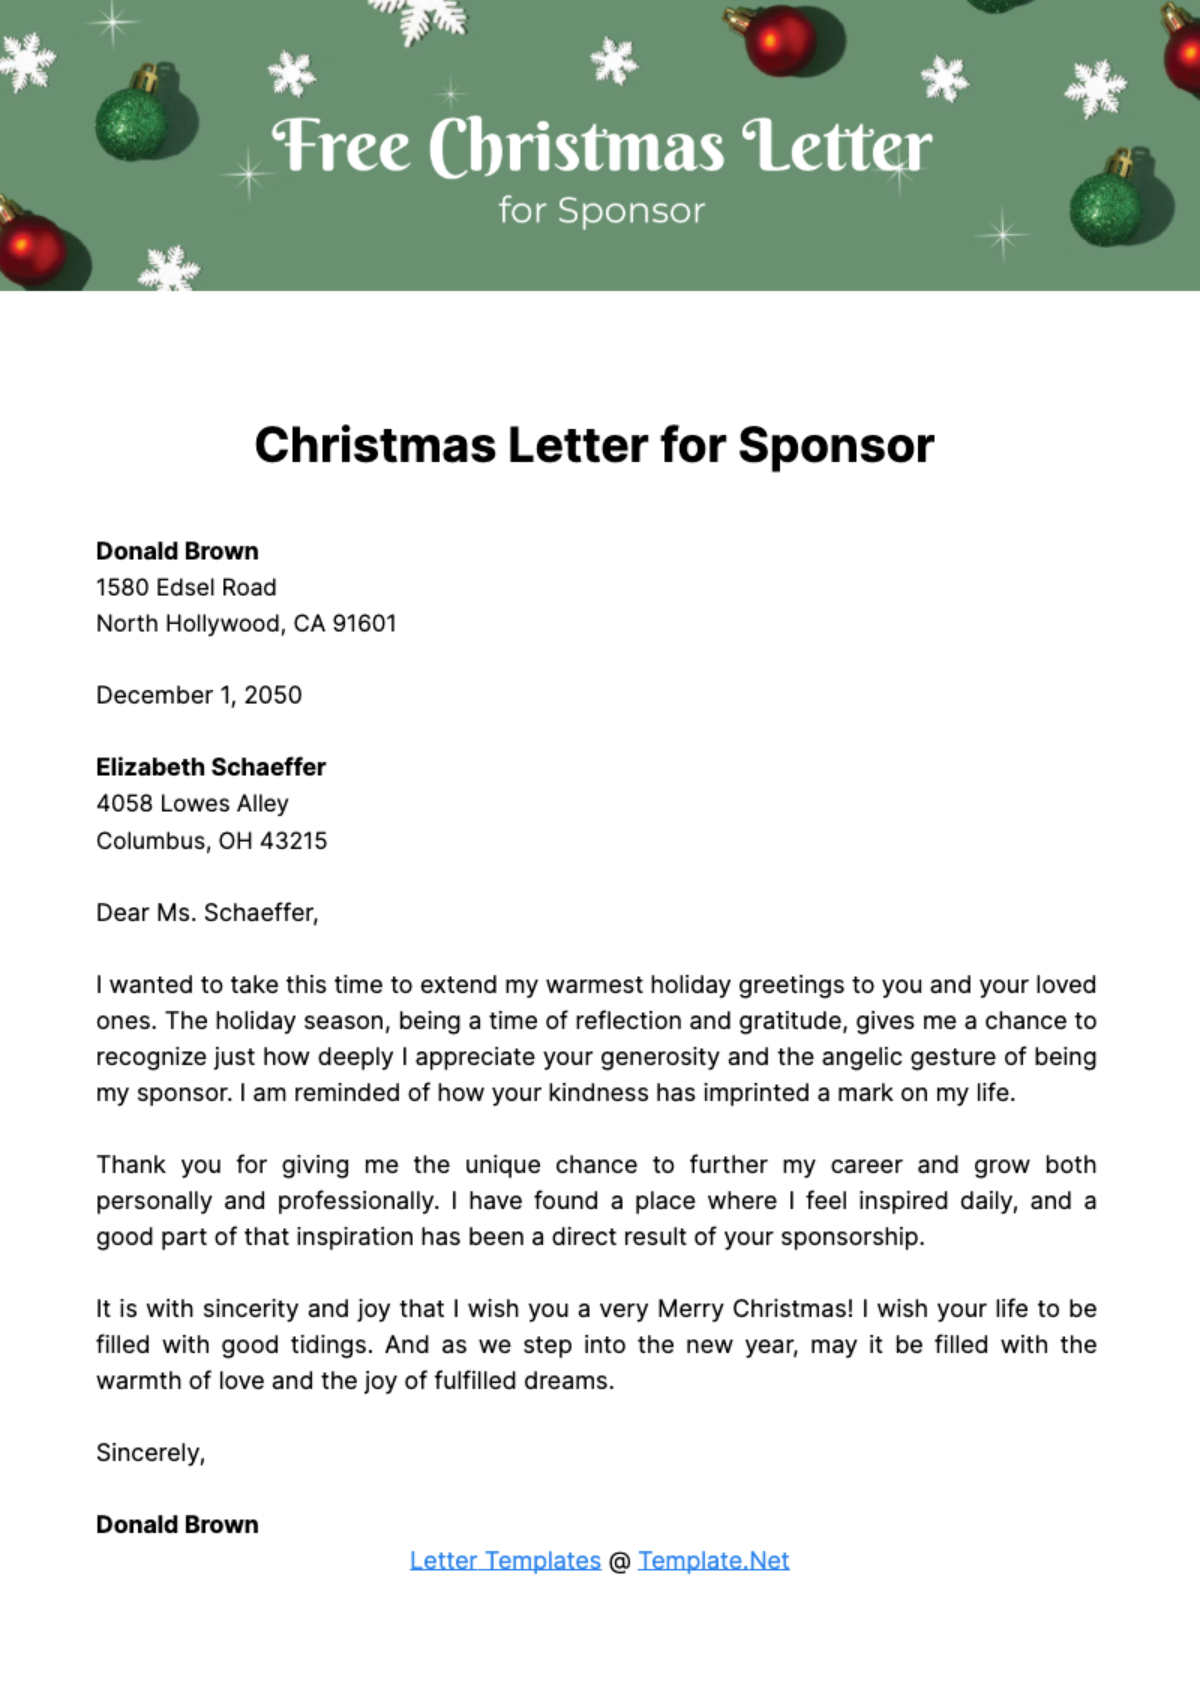 Christmas Letter for Sponsor Template